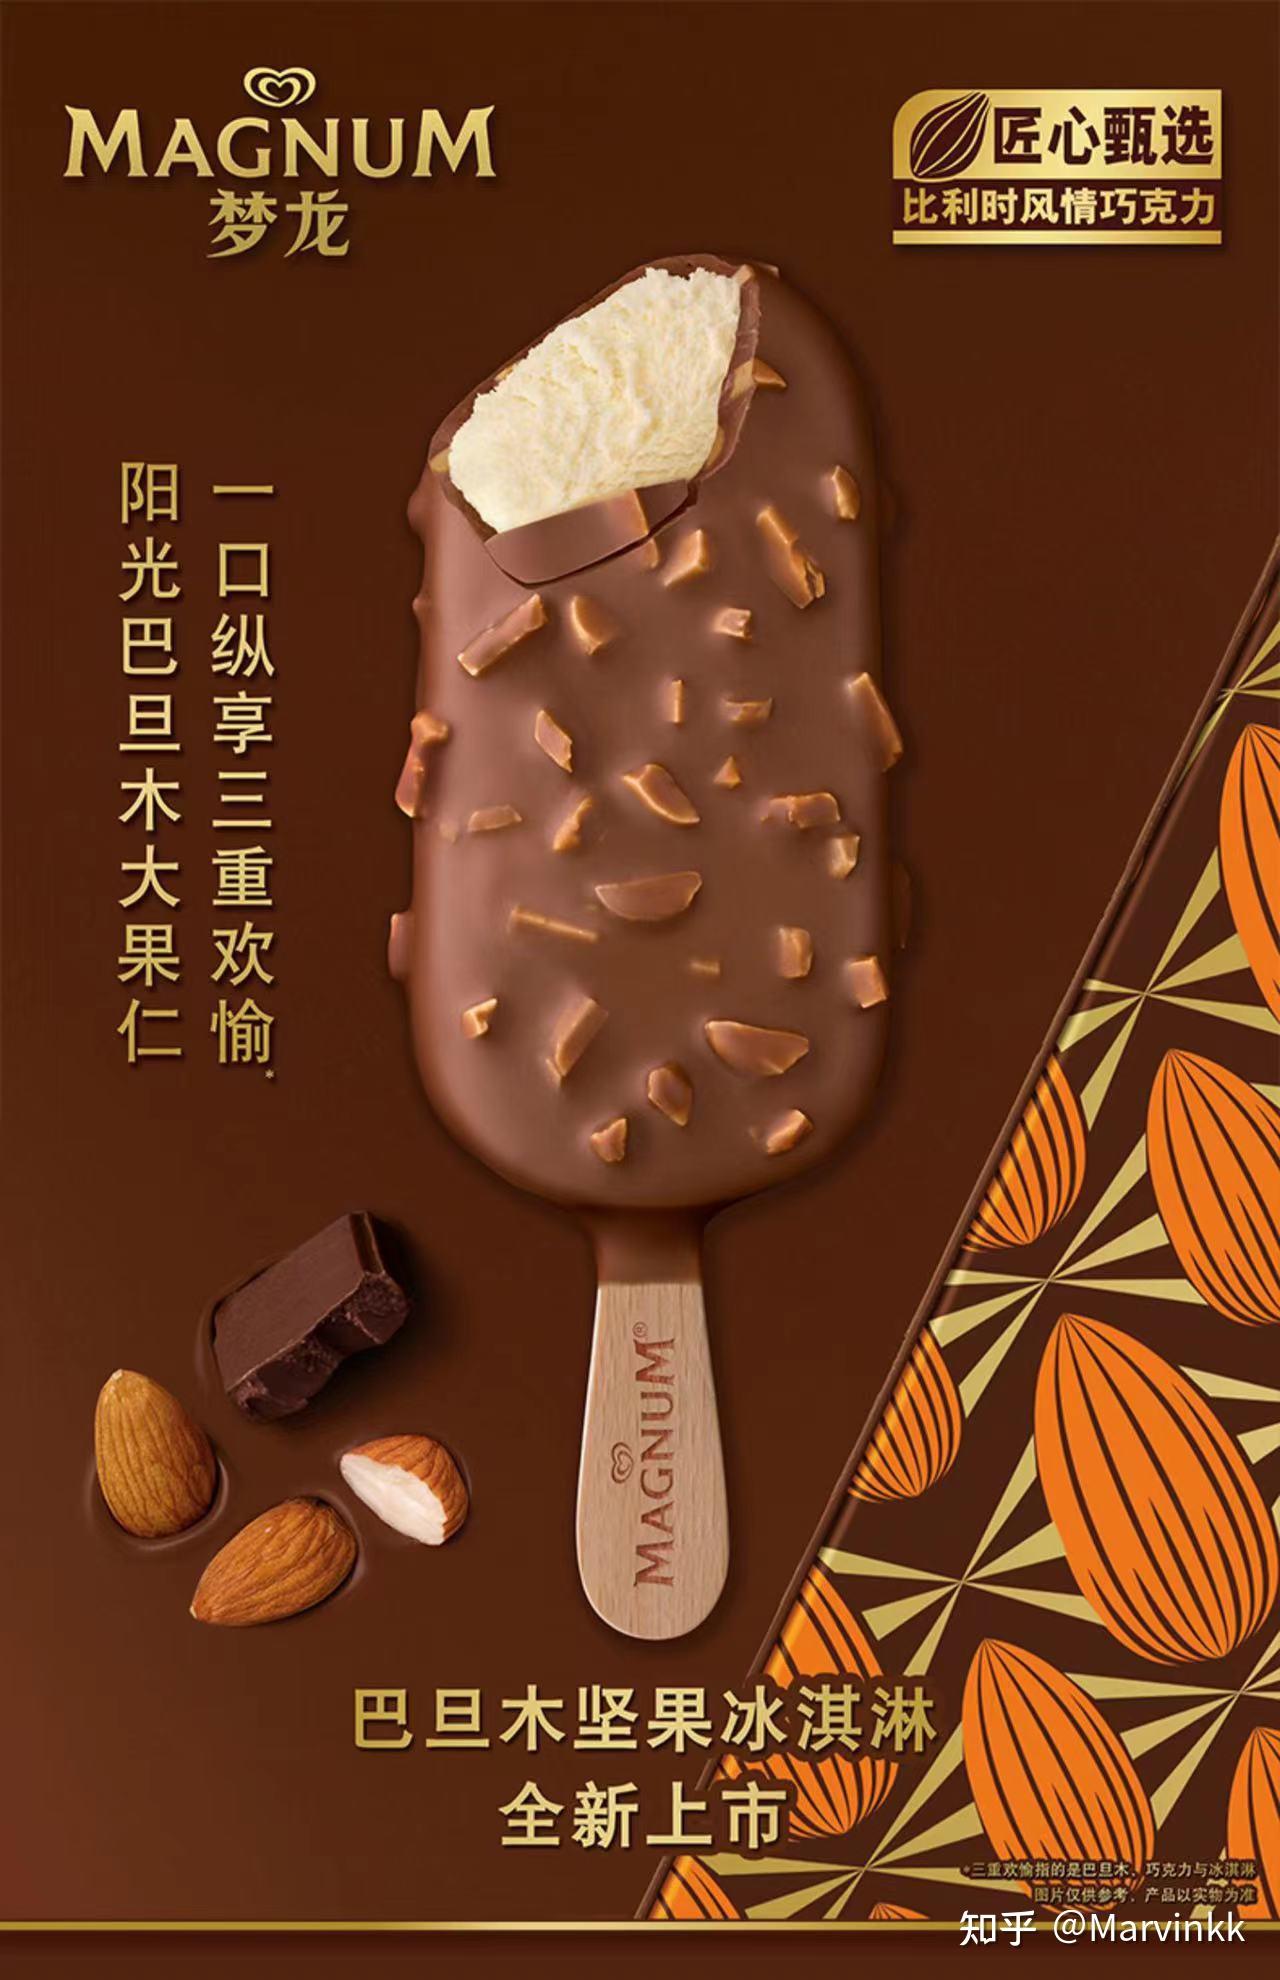 梦龙雪糕广告2013图片